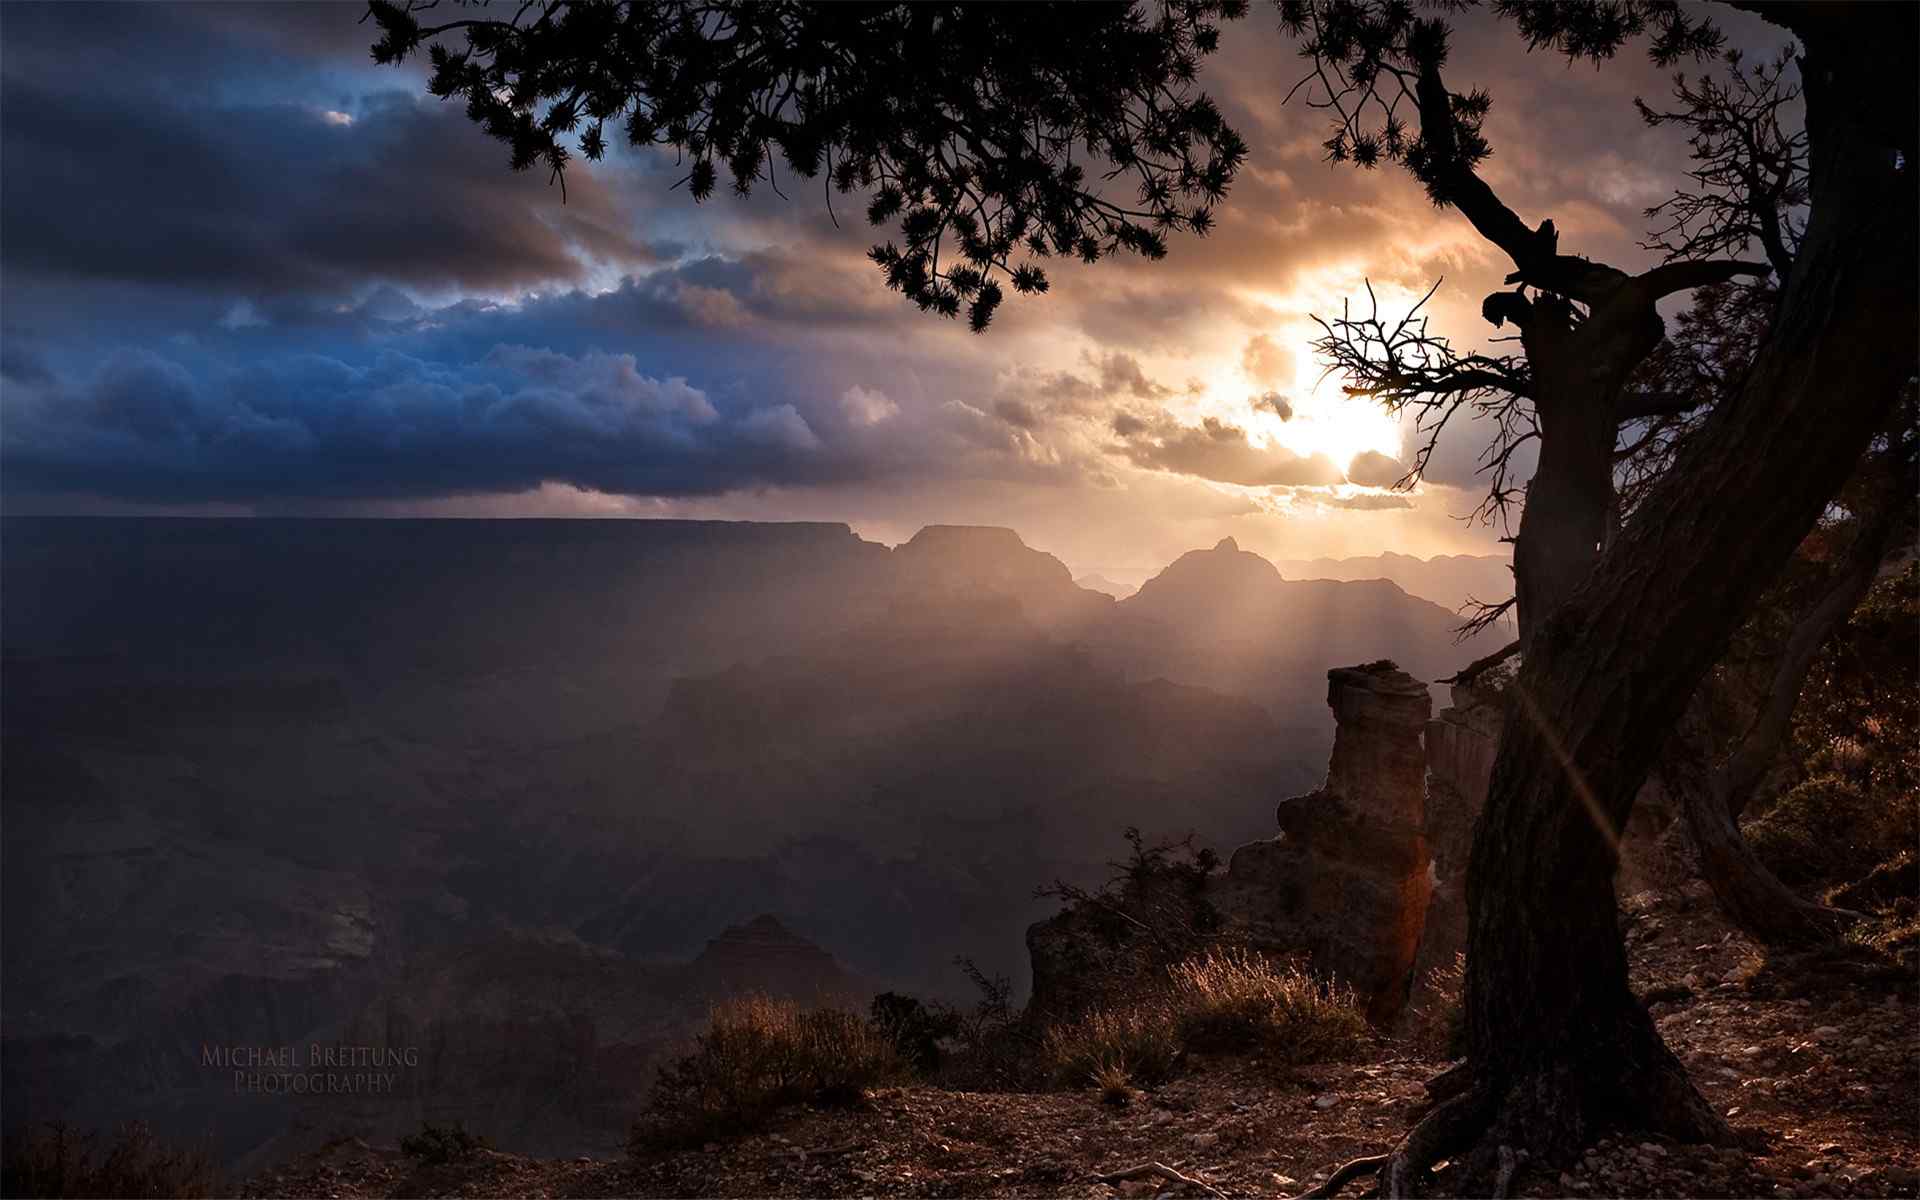 唯美夕阳|美国亚利桑那州羚羊峡谷自然风景高清壁纸(12辑)